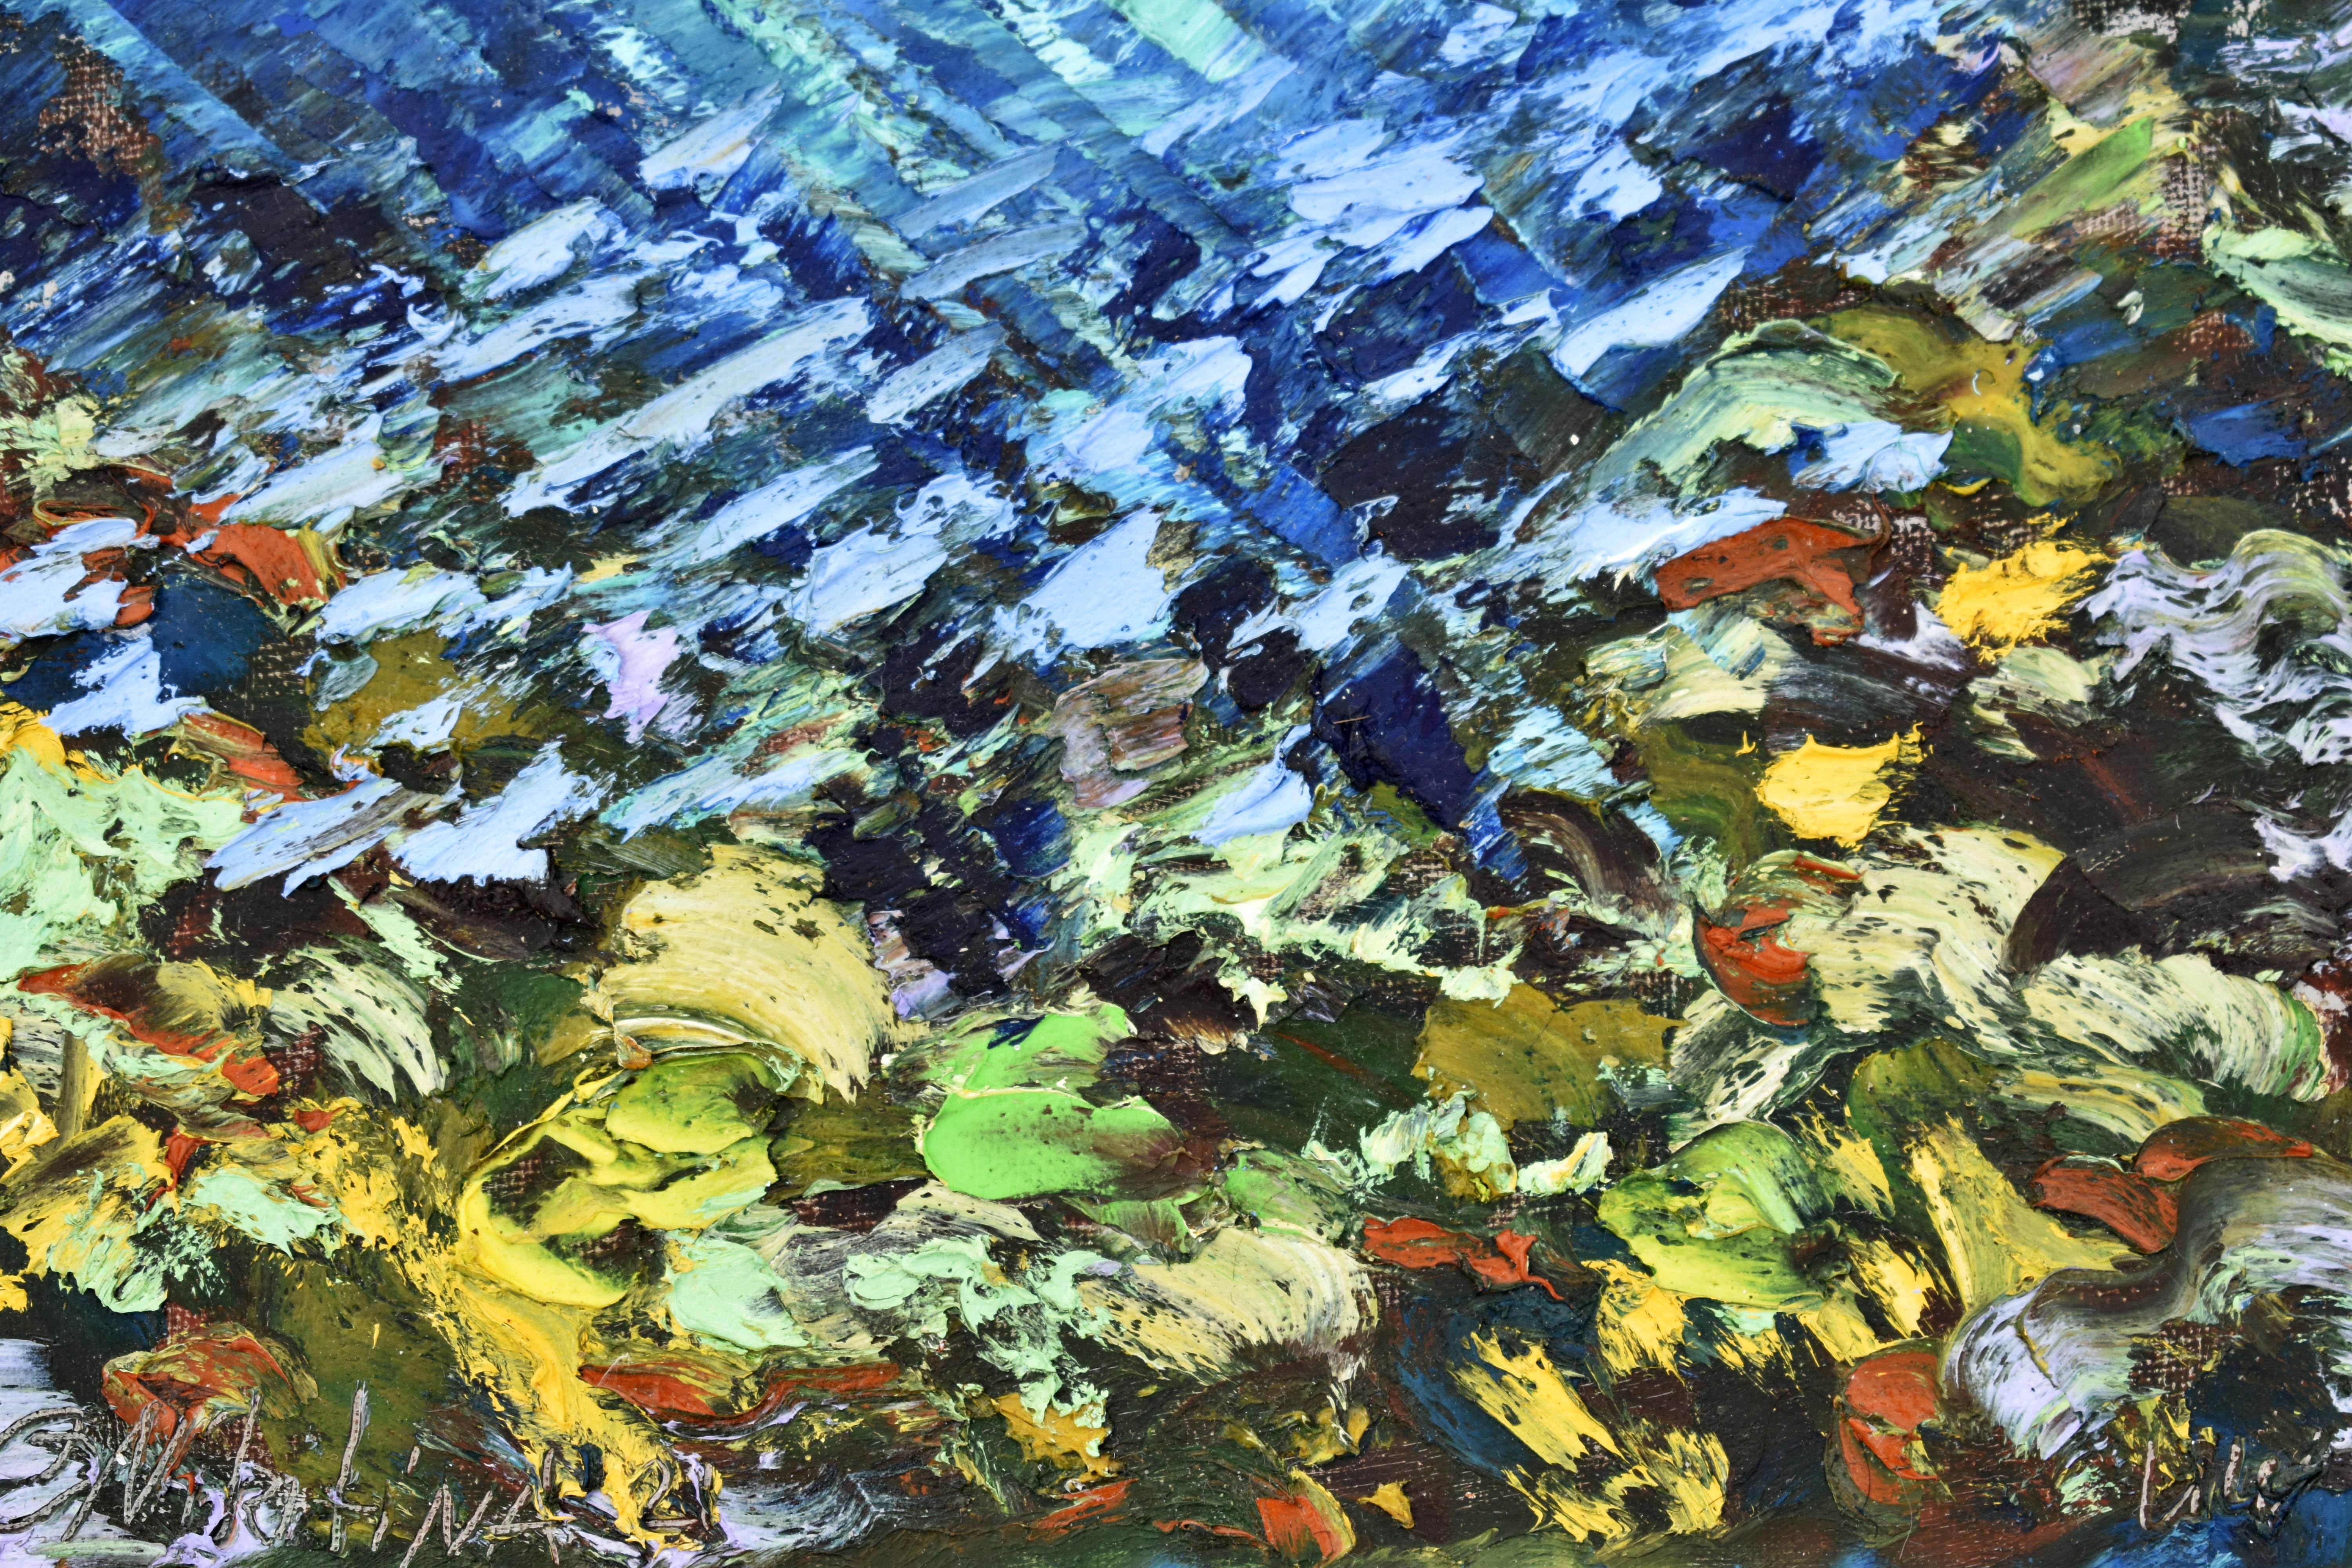 UNDERWATER PAINTING Le récif corail jaune a été fabriqué sous l'eau - Impressionnisme abstrait Painting par Olga Nikitina